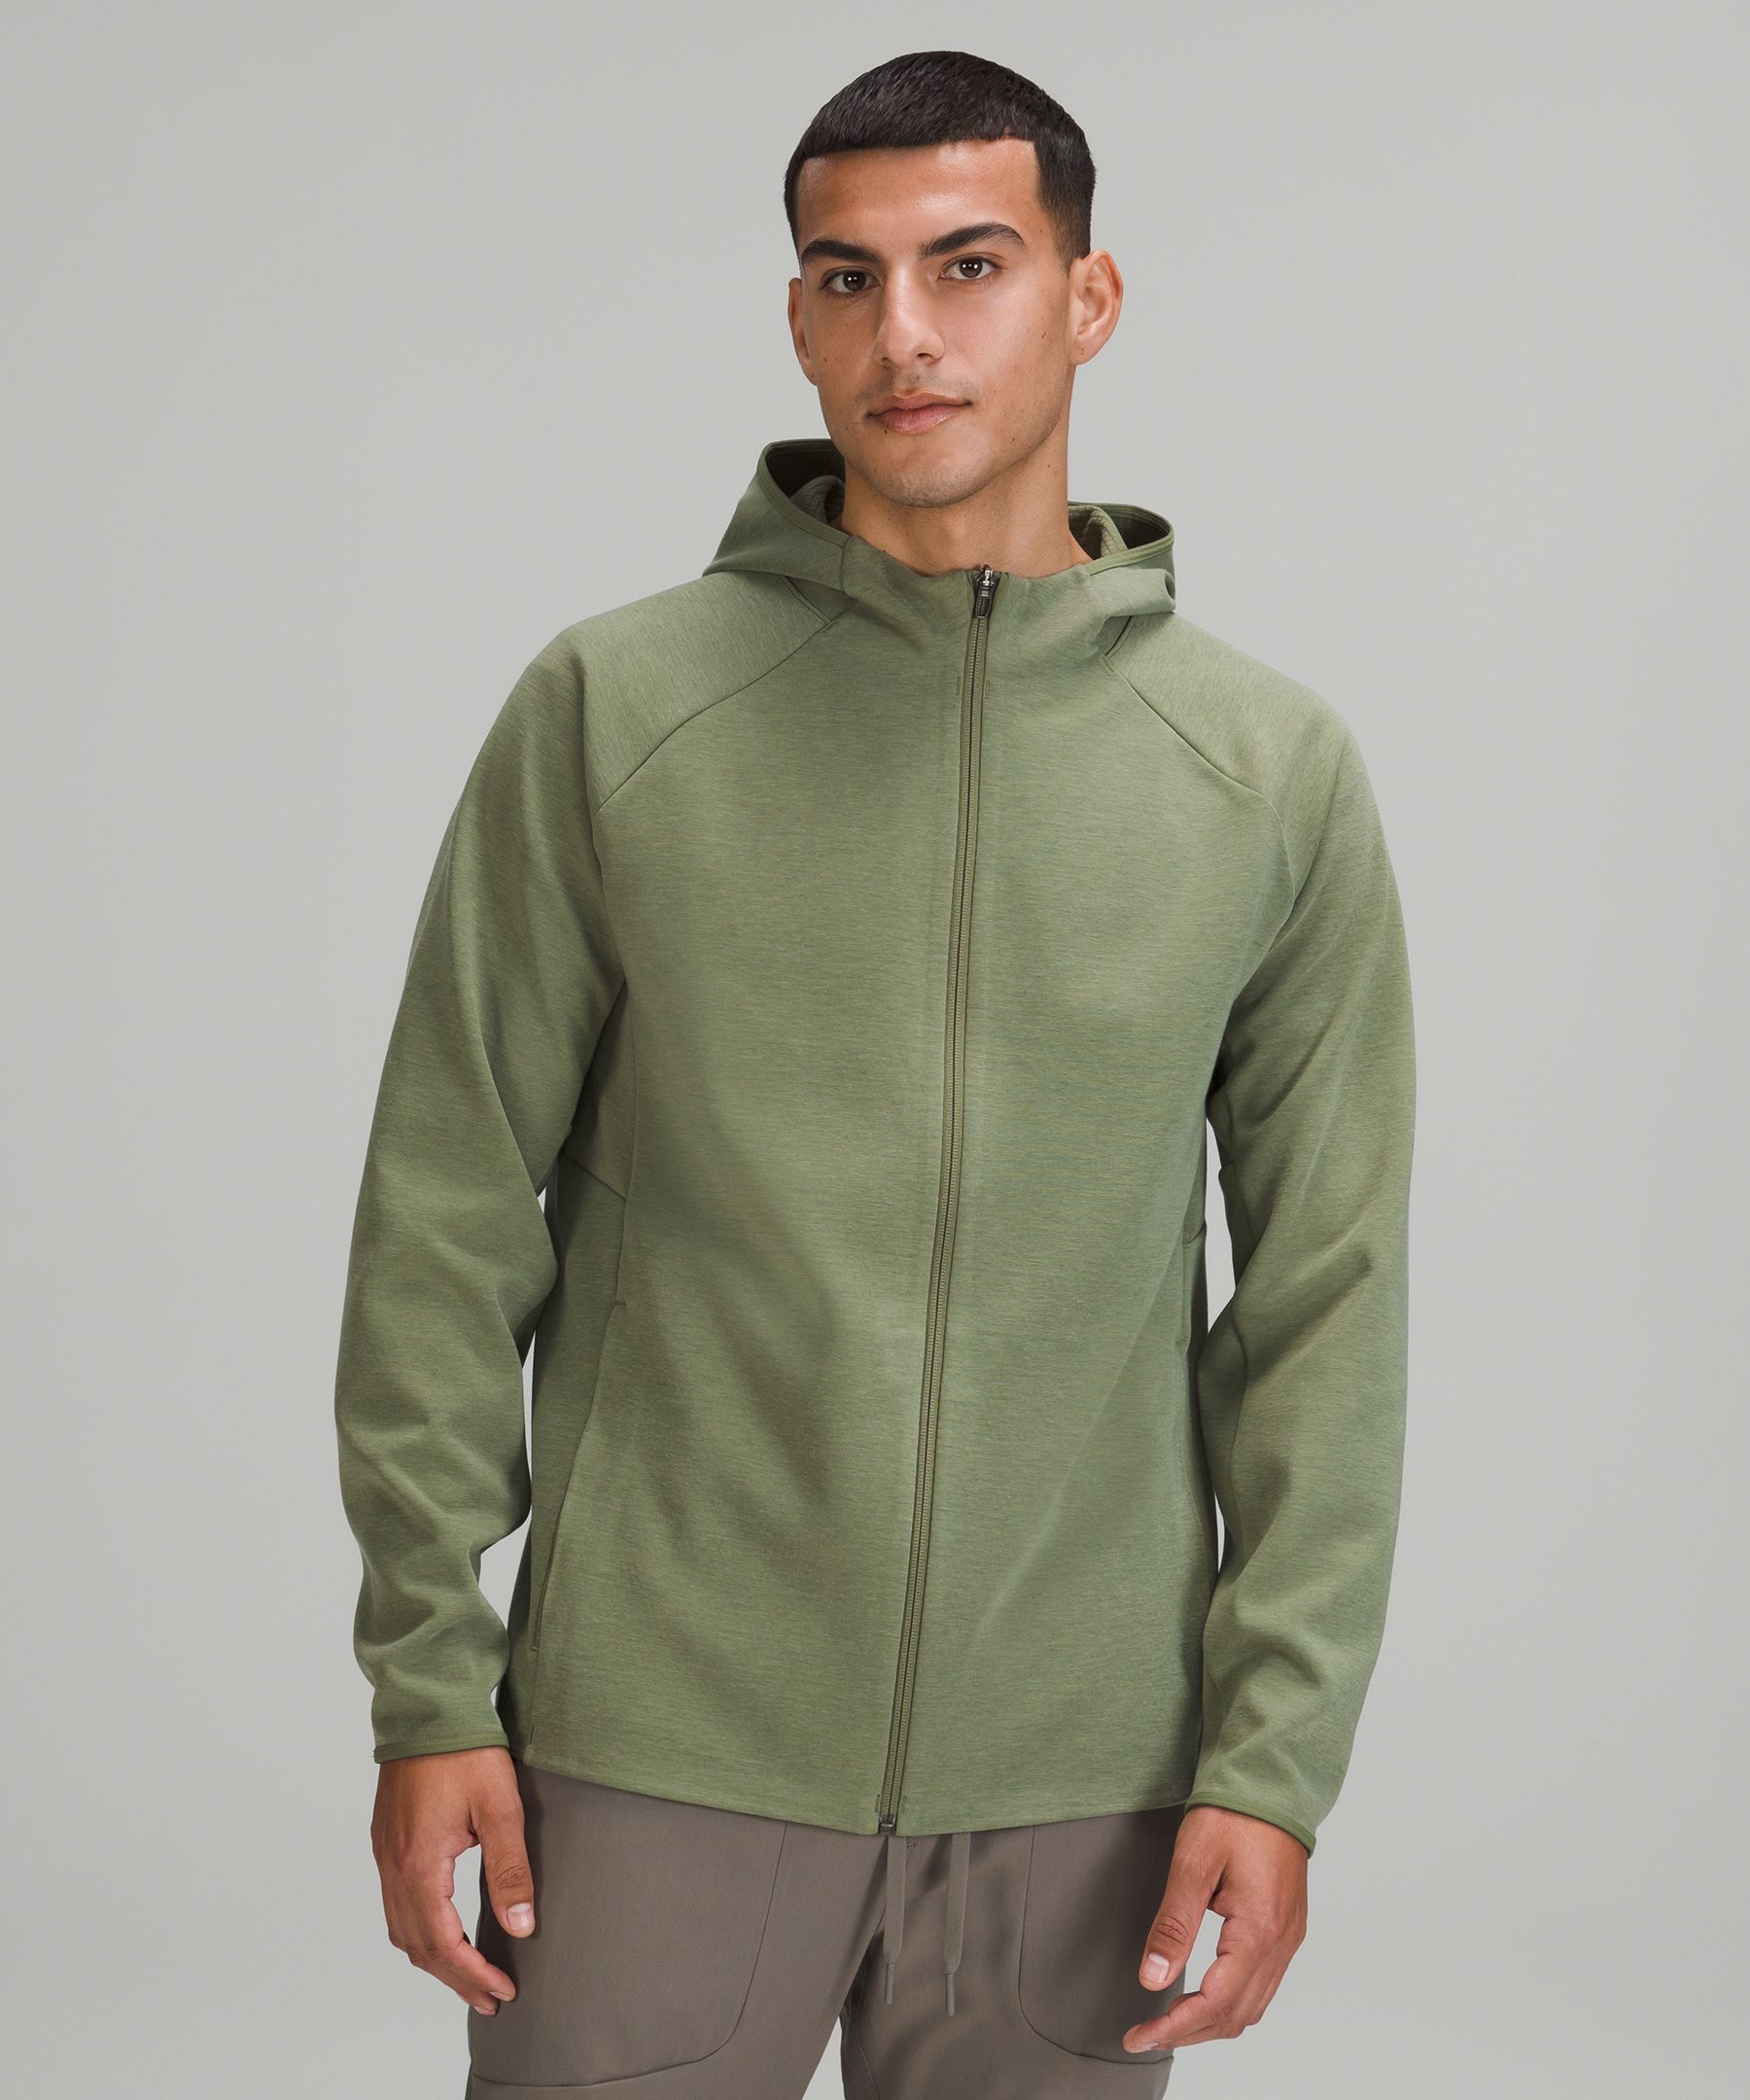 Lululemon Gridliner Fleece Zip Hoodie In Heathered Green Twill | ModeSens